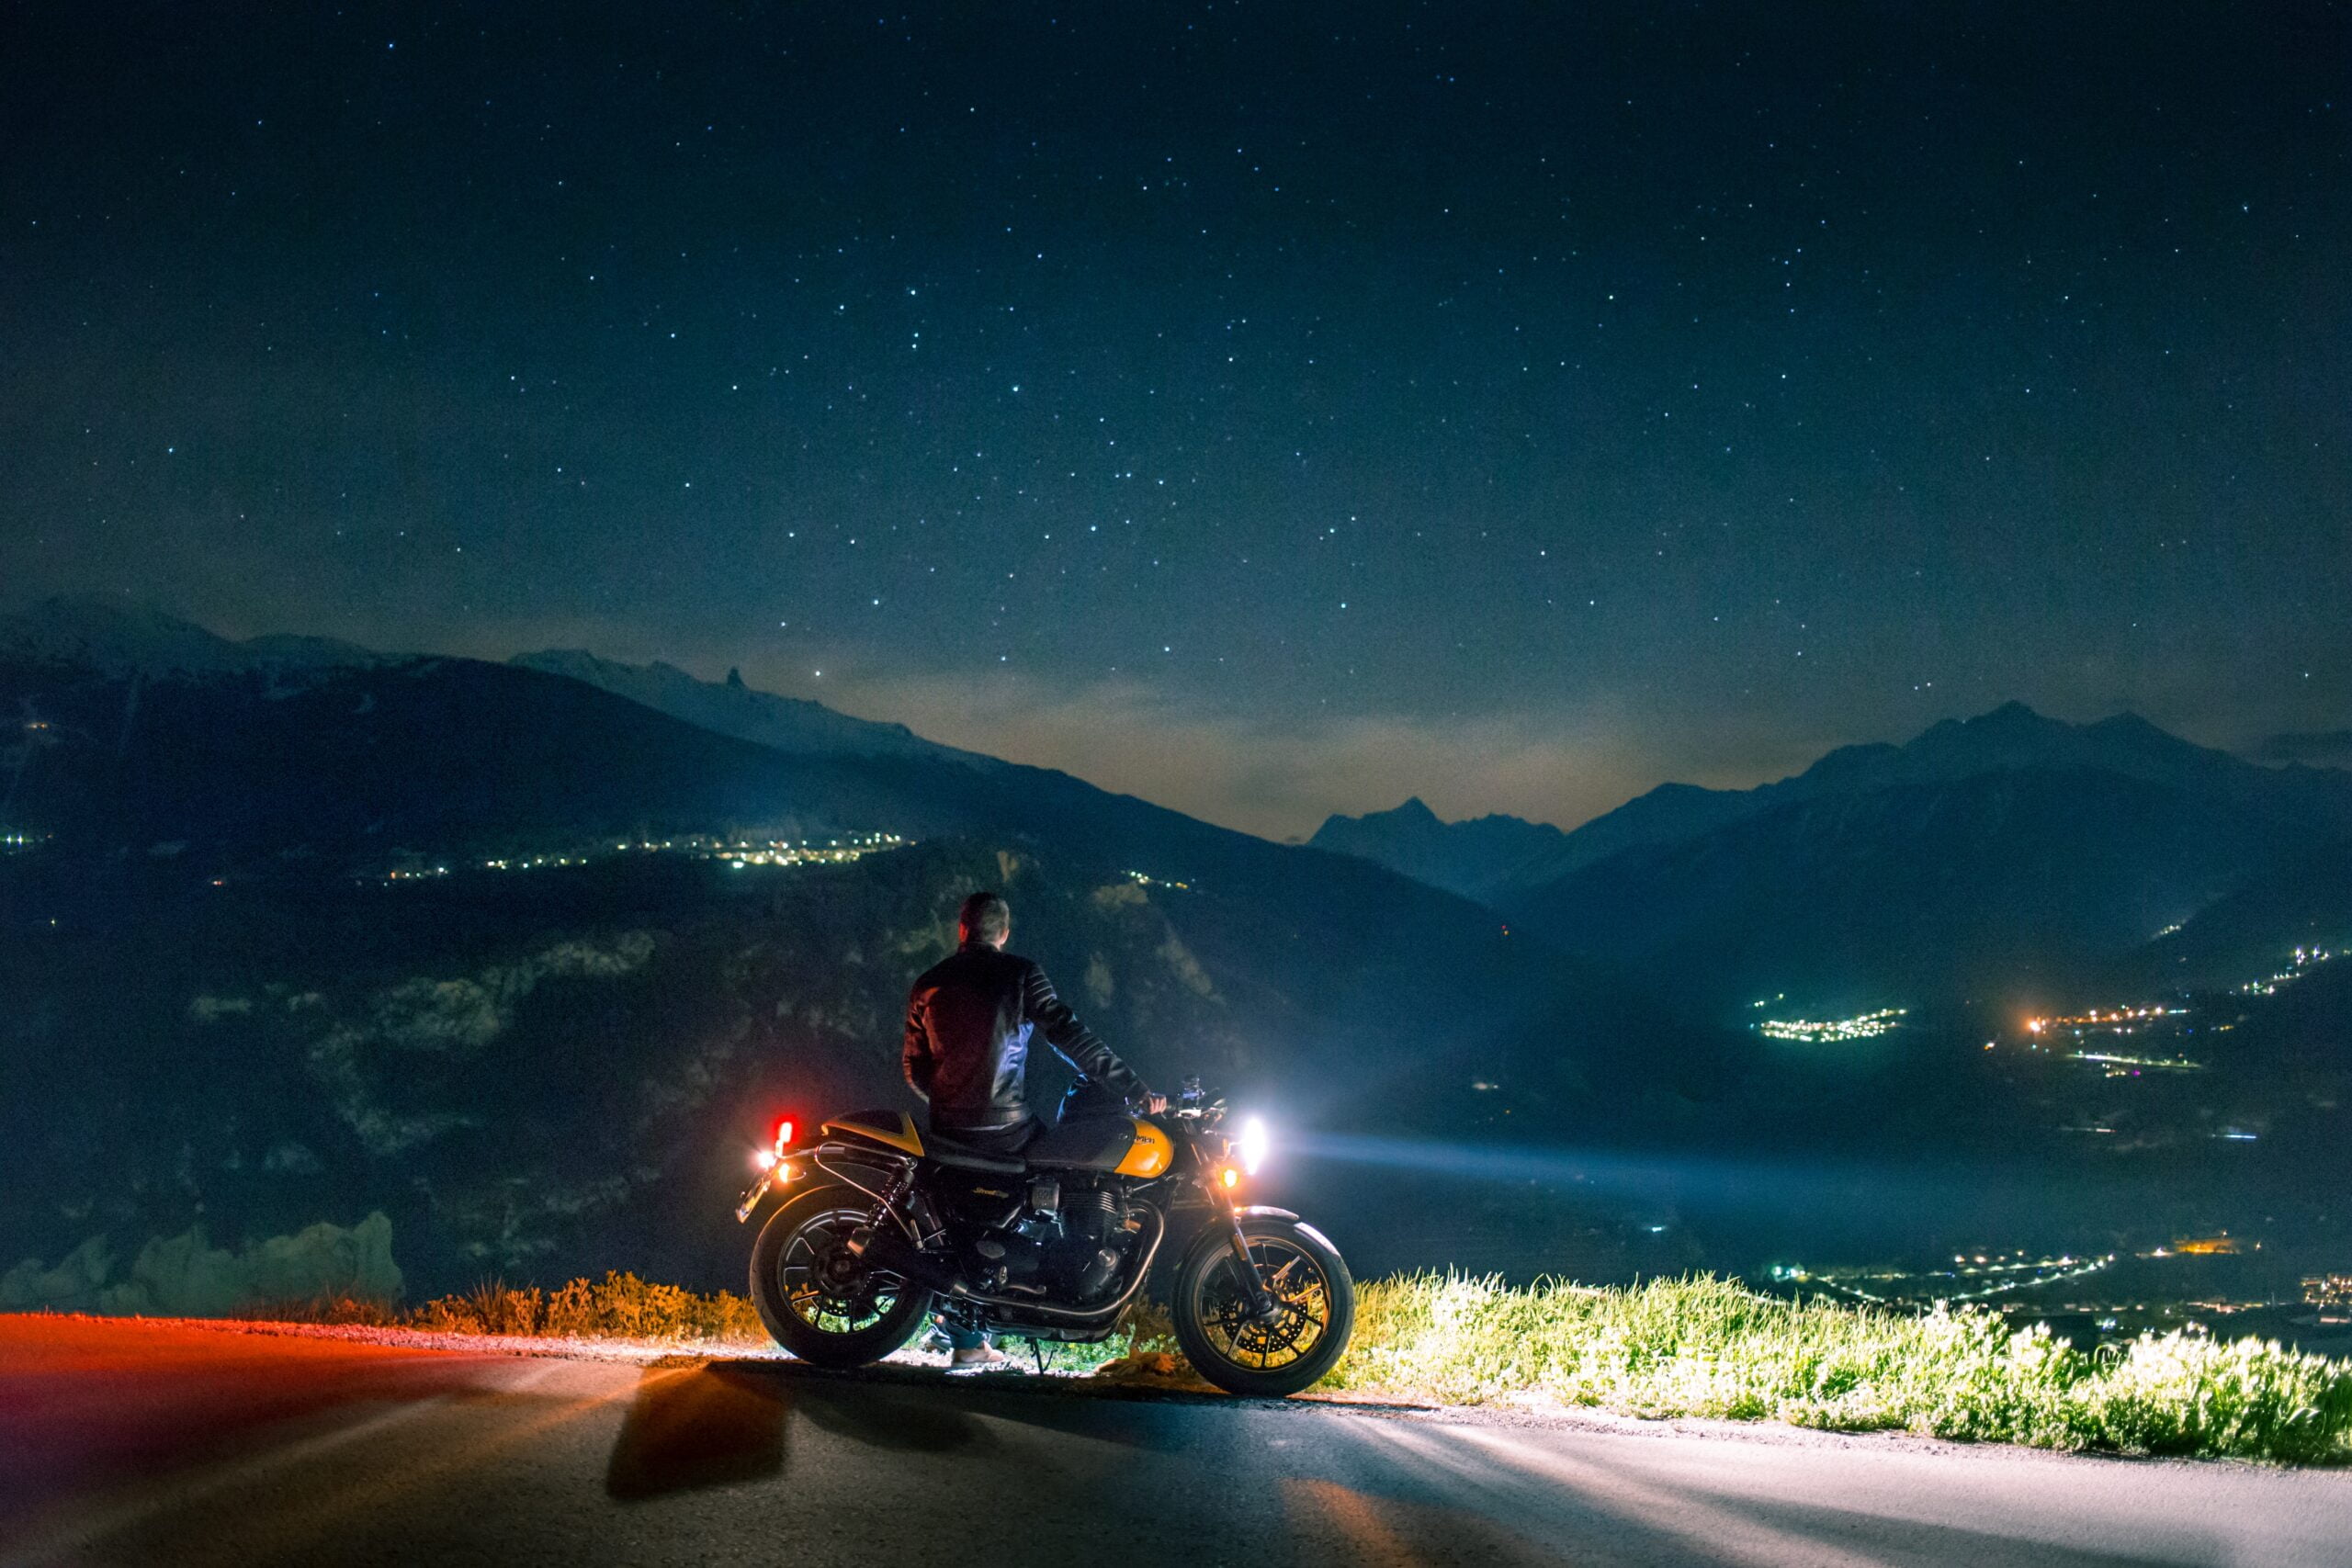 En mann står lent inntil motorsykkelen sin og ser utover en fantastisk fjellandskap på kvelden. Stjernene er fremme og man ser lysene fra små tettsteder.